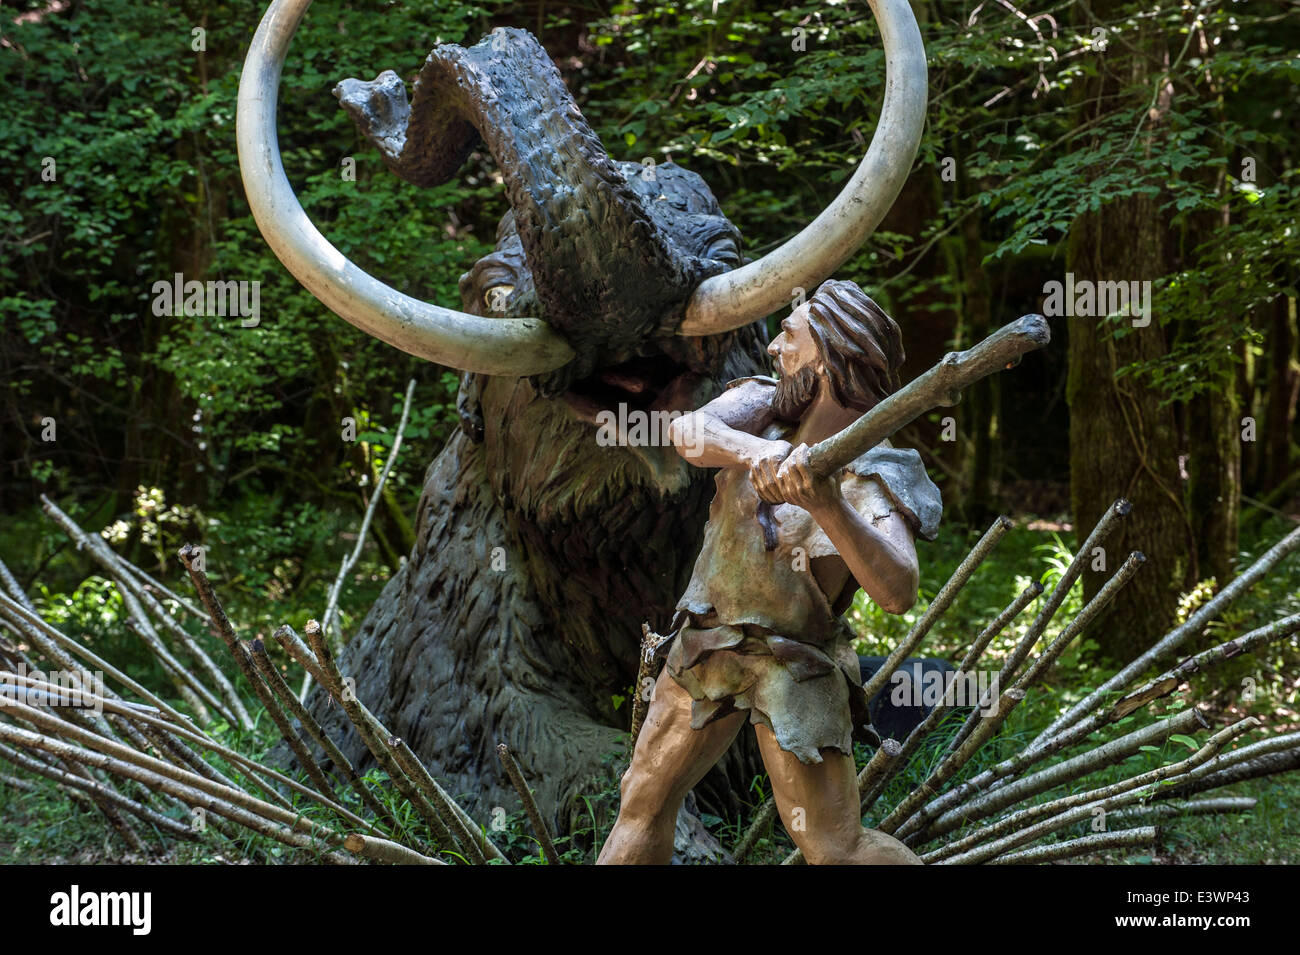 Chasseur de Neandertal tuant piégés au mammouth préhistorique Préhisto Parc, Tursac, Dordogne, Aquitaine, France Banque D'Images